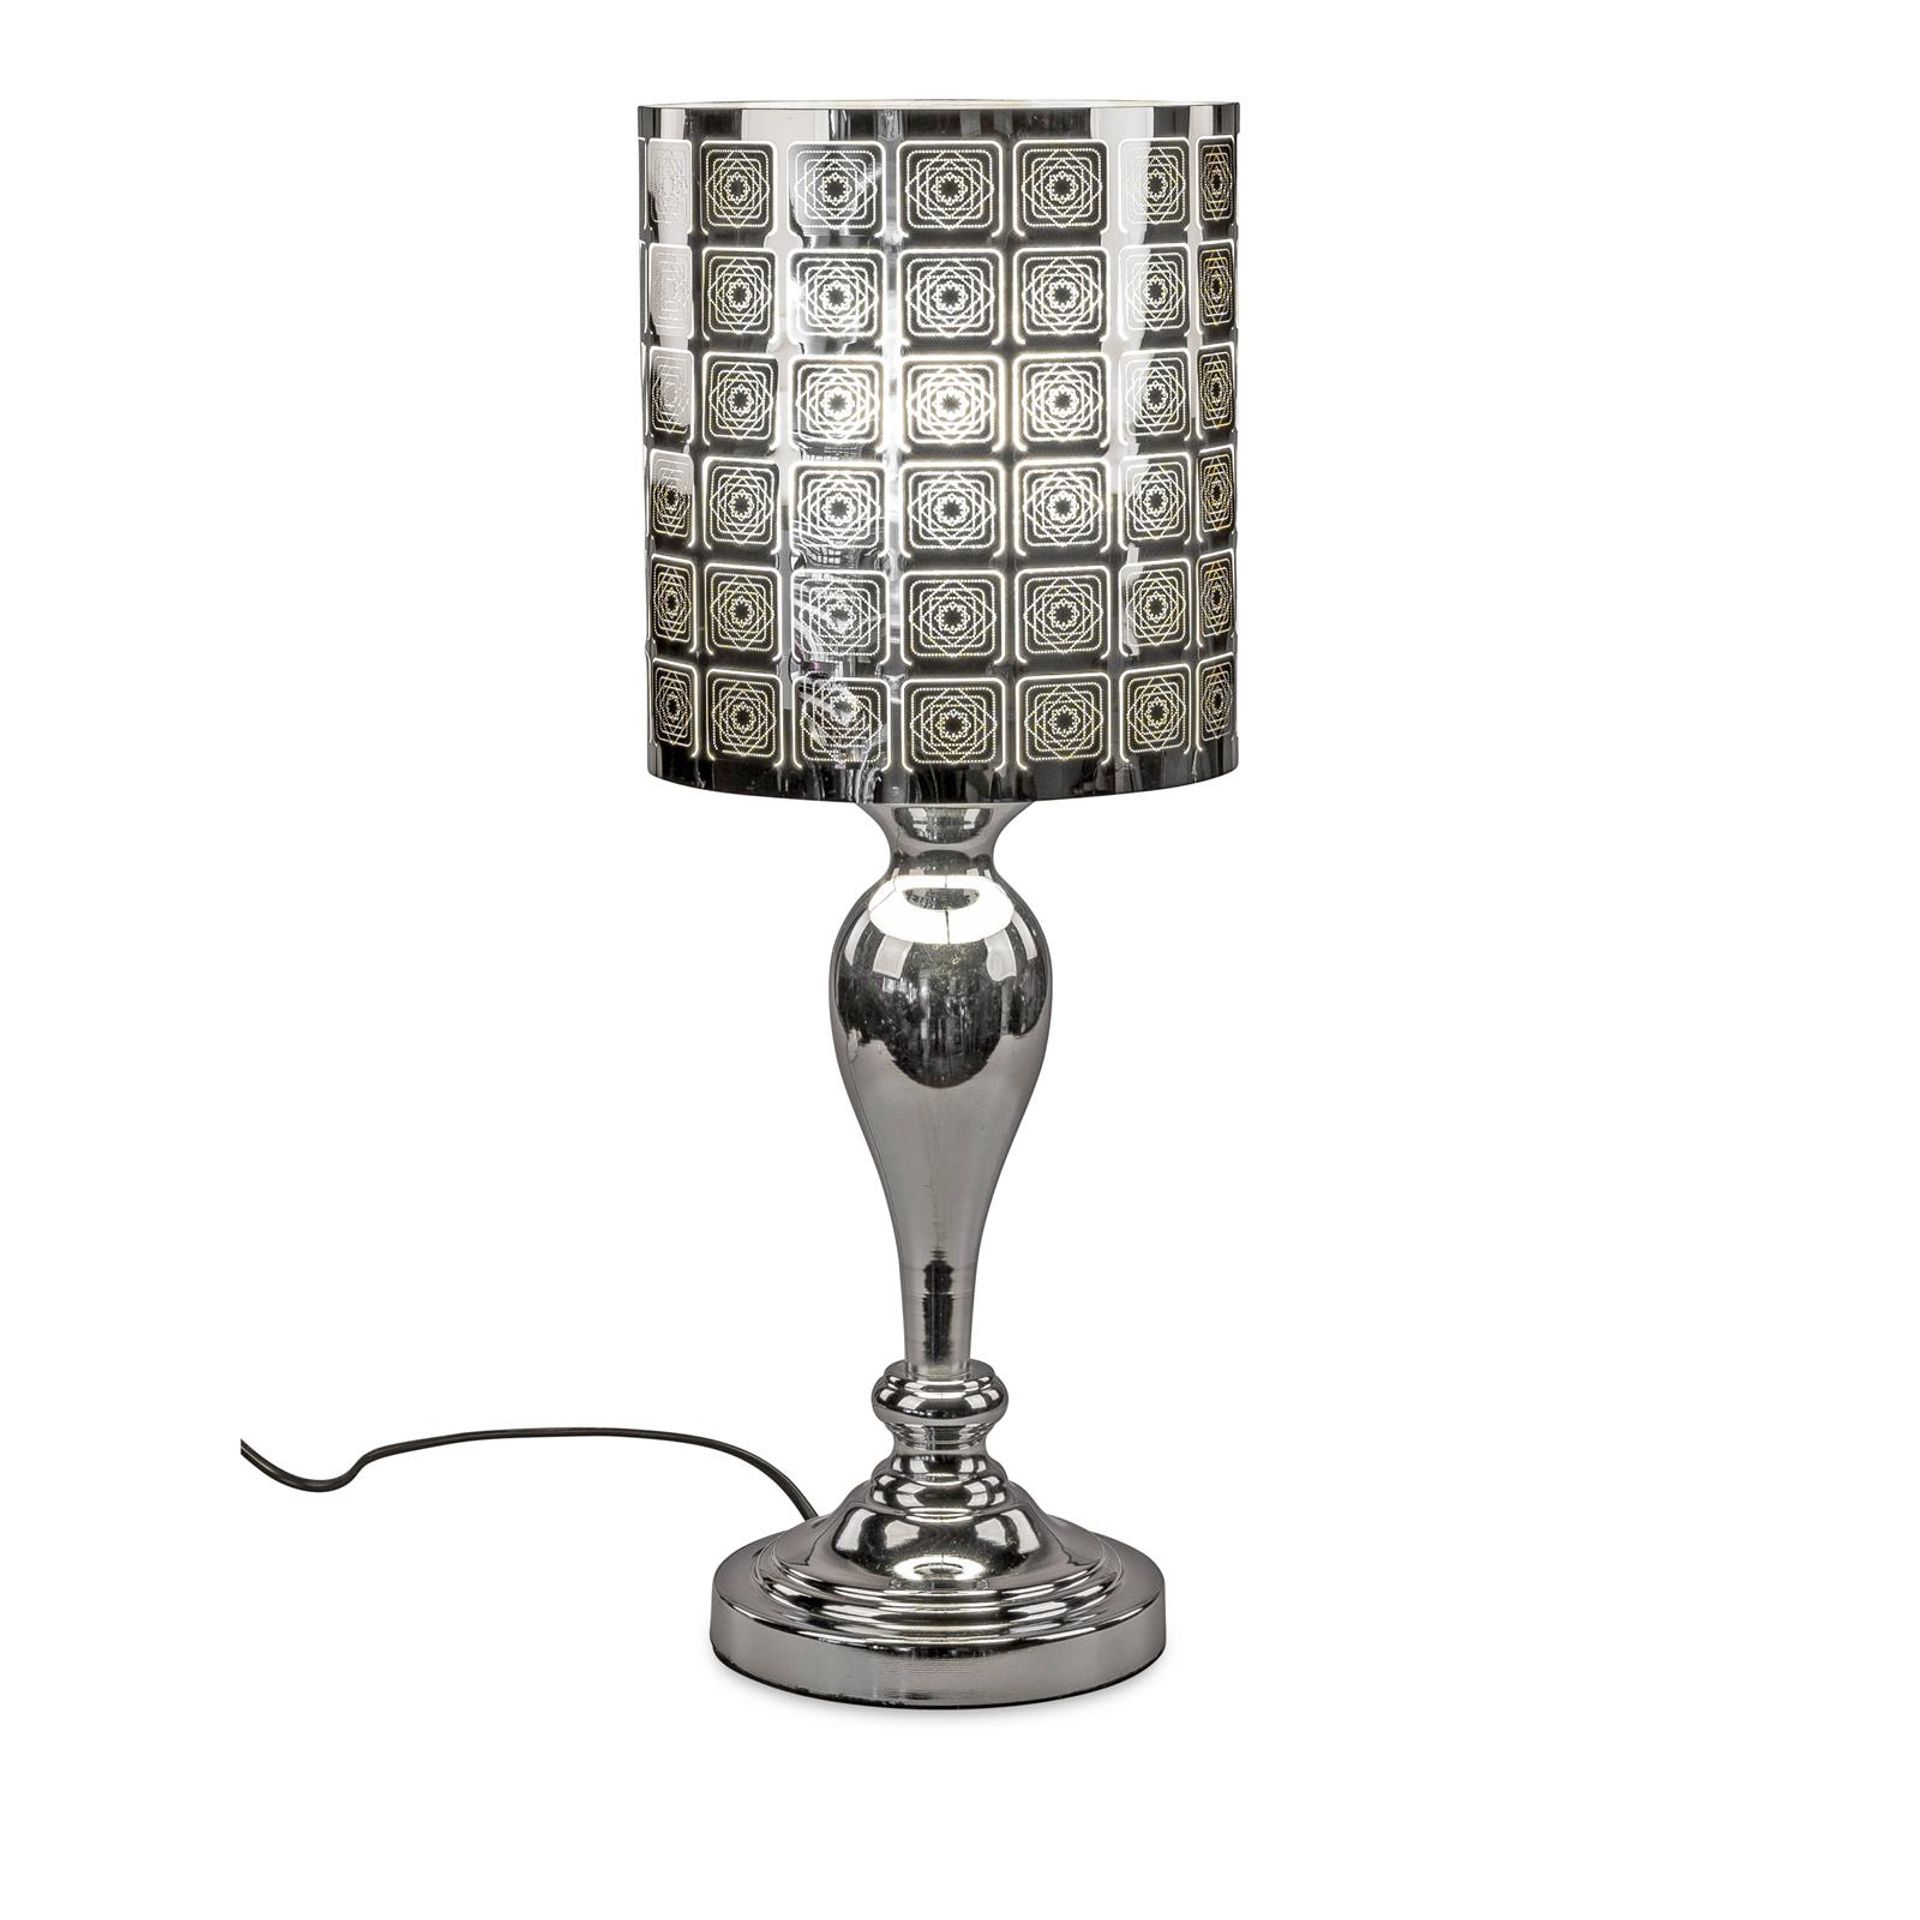 Lampe auf Fuß H: 52 cm x D: 20 cm mit Touch und Karo-Motiv – Glänzender Edelstahl mit veredelter Spezialfolie